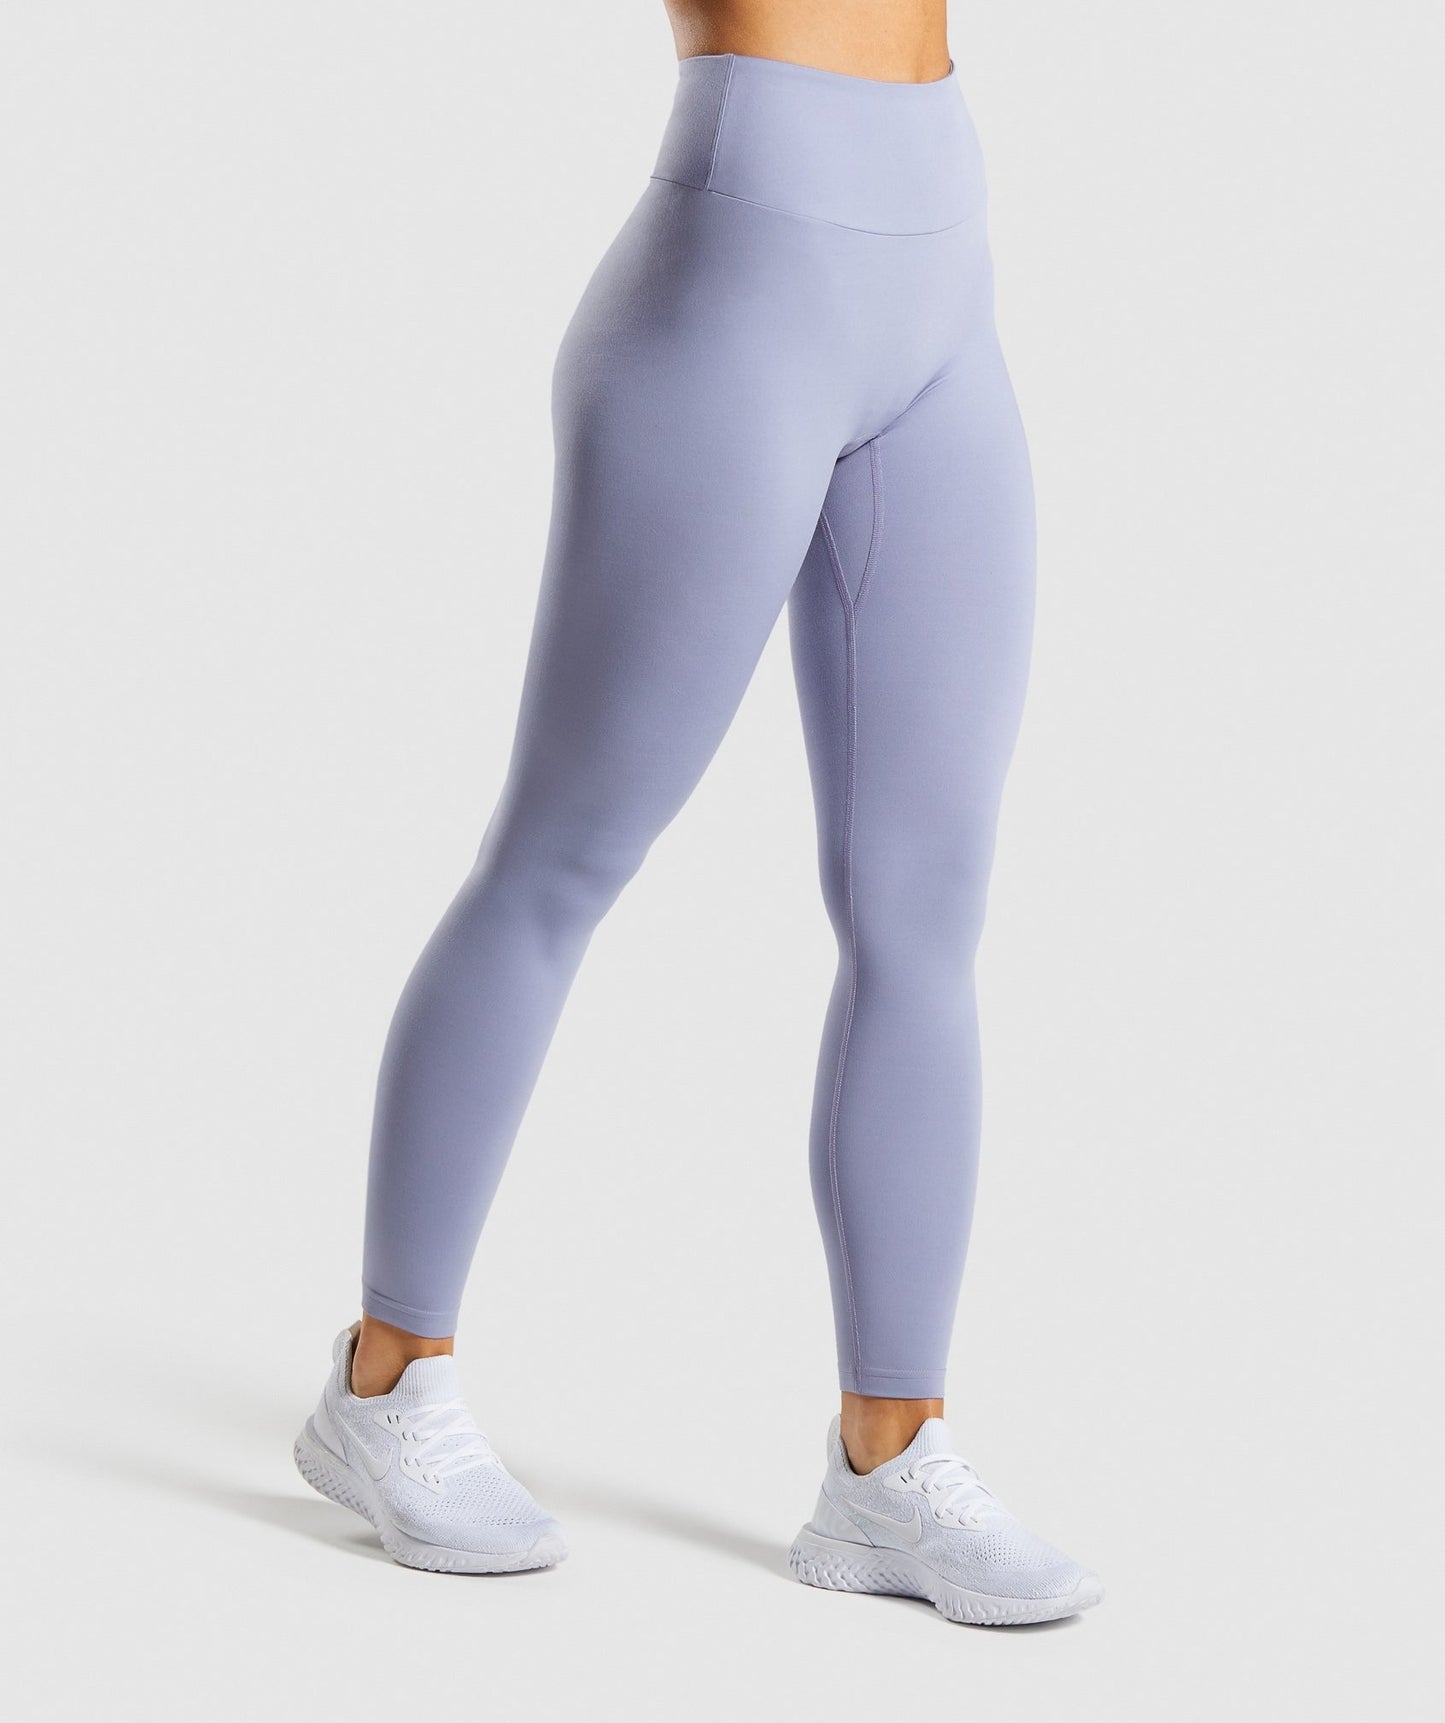 Custom Abstract Yoga pants